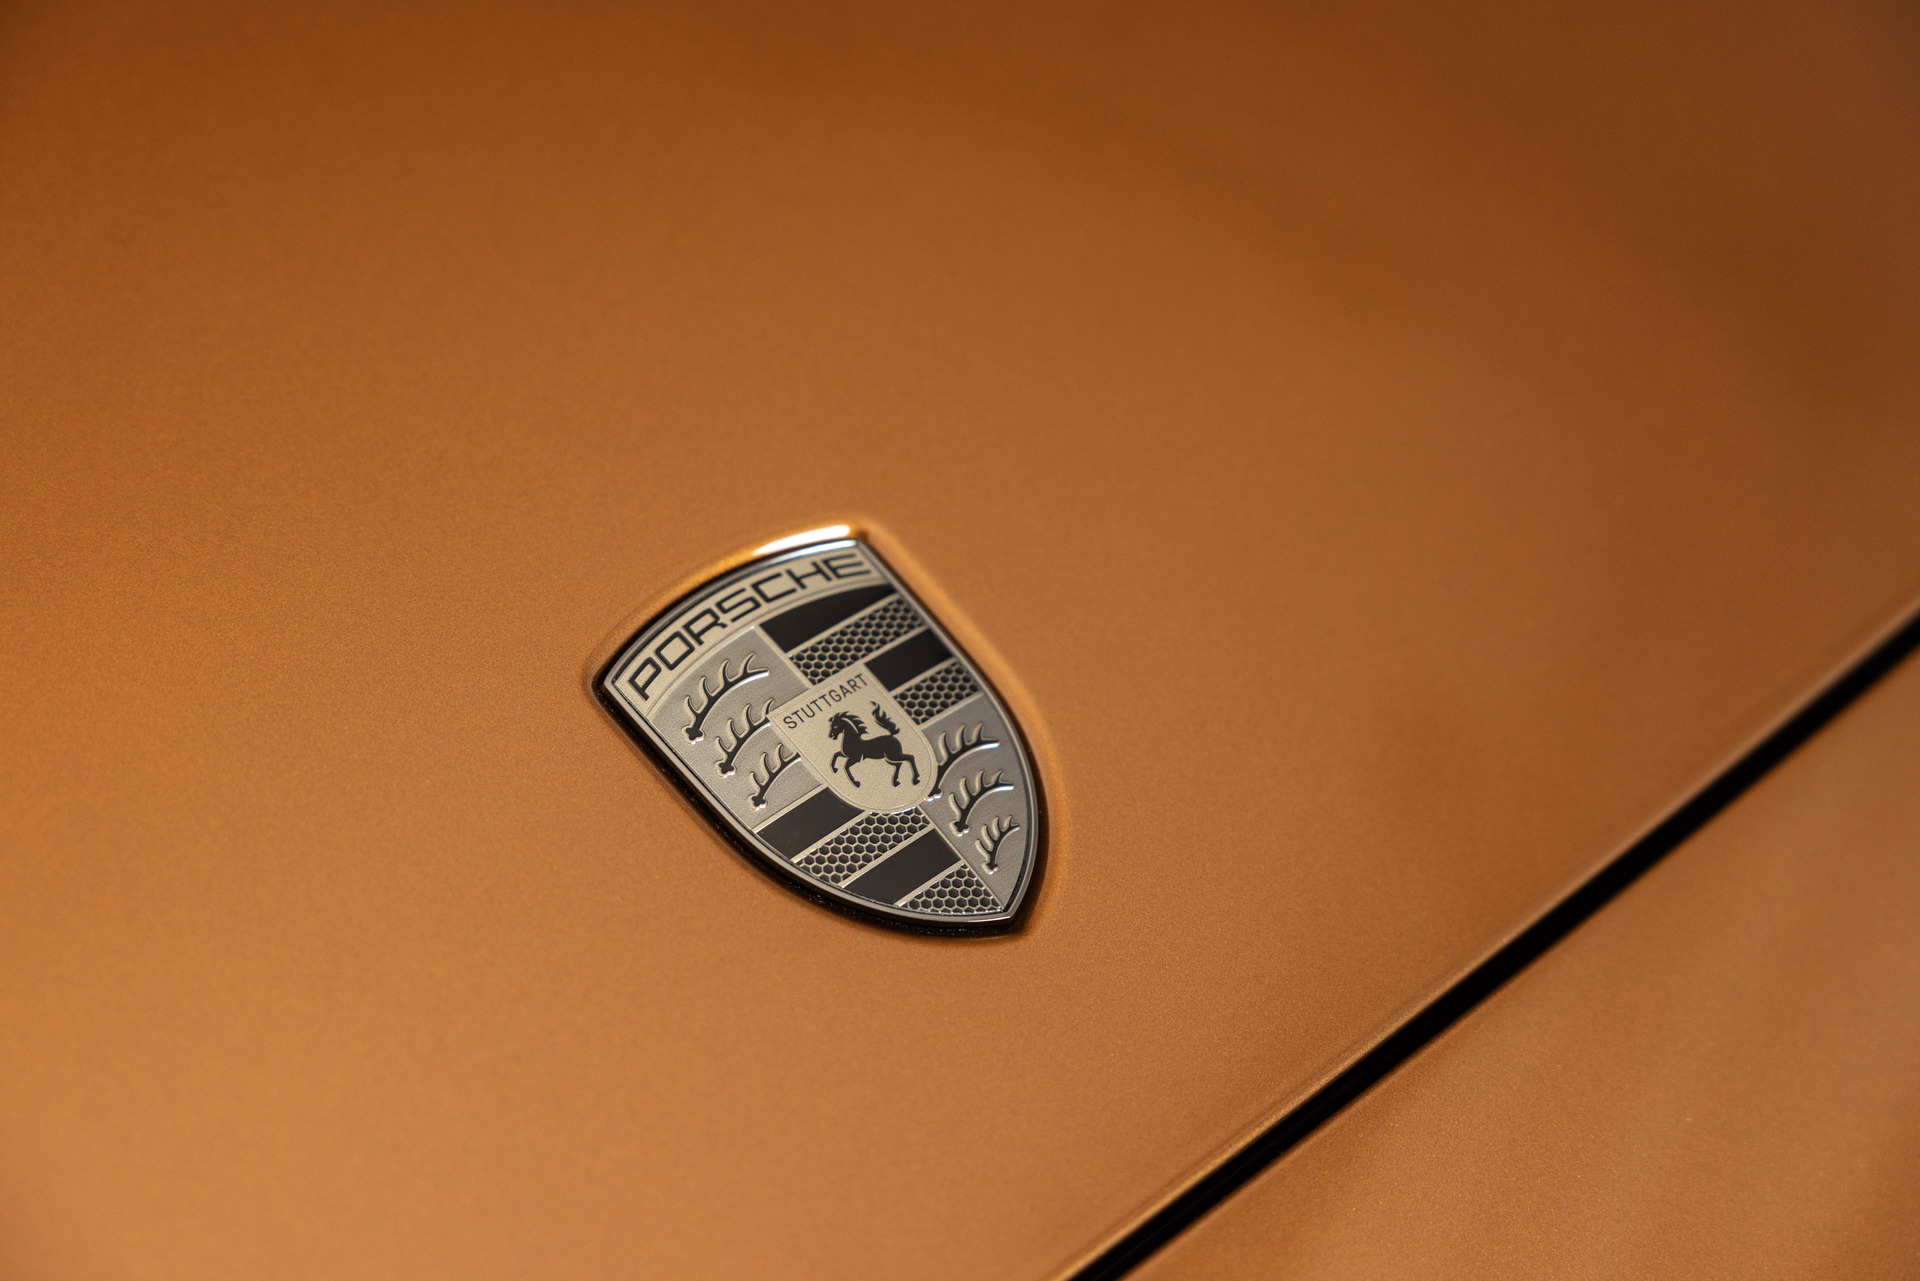 Digitaler, luxuriöser, effizienter: Der neue Panamera - Porsche